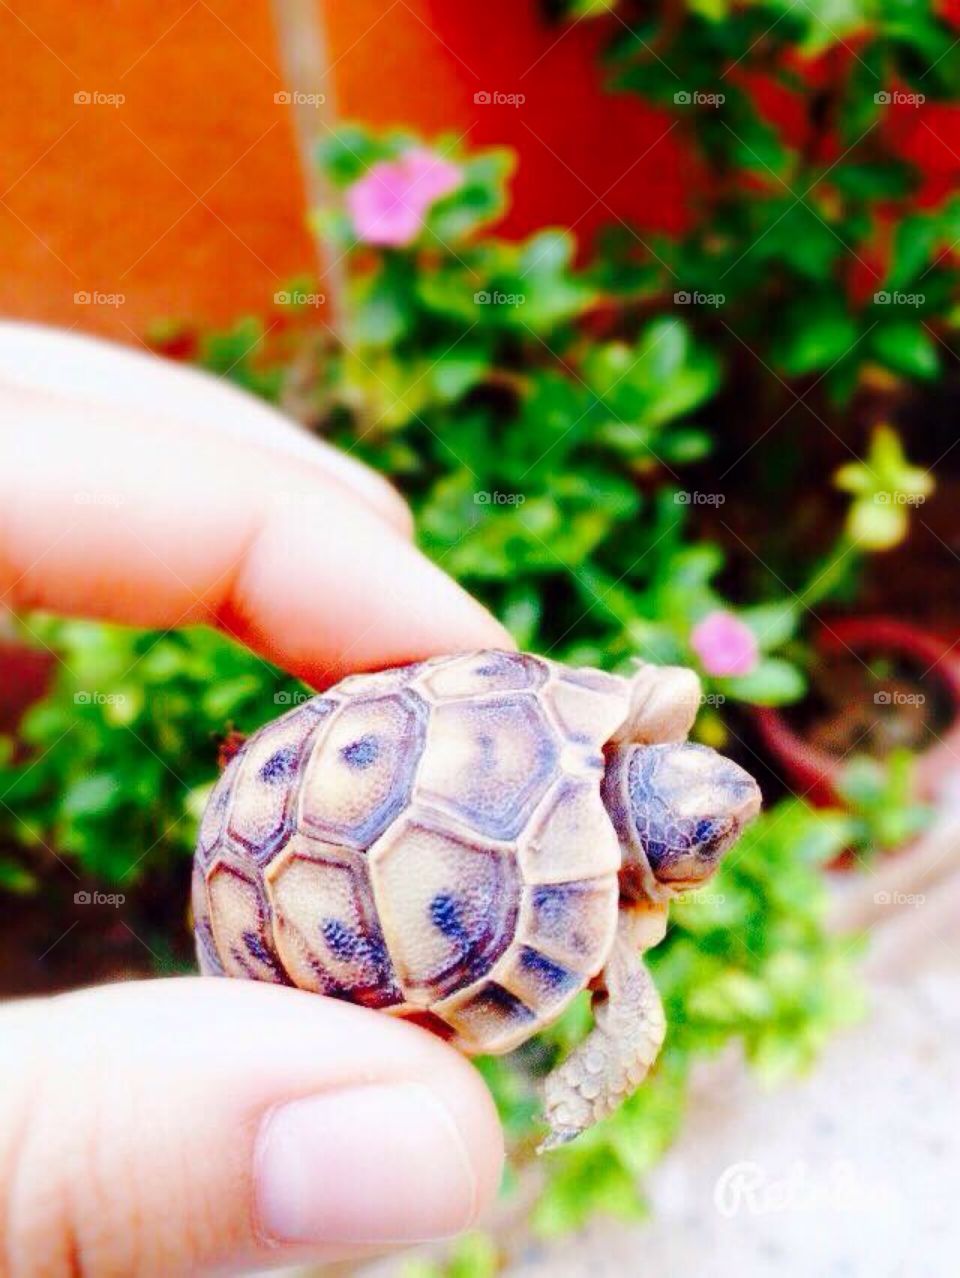 My Little Turtle..